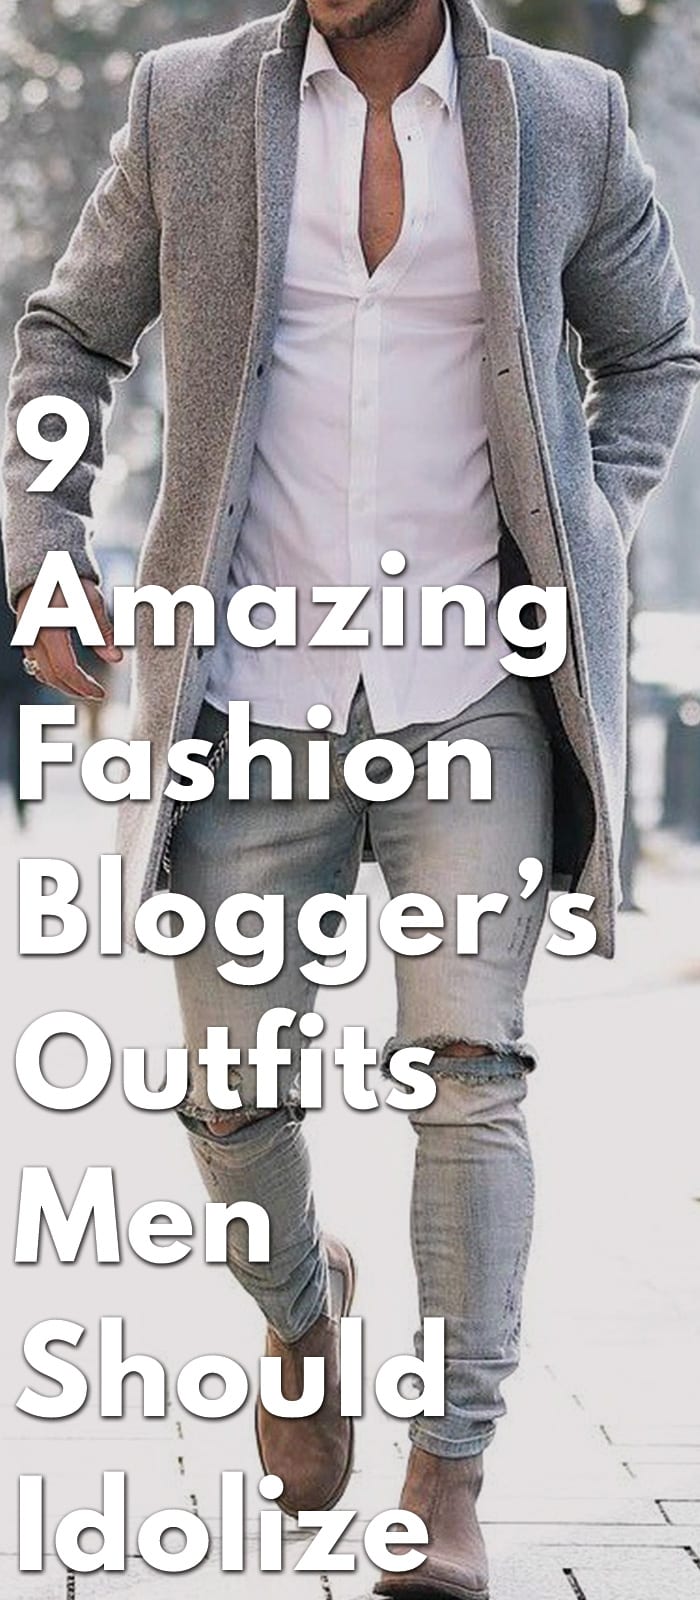 9-Amazing-Fashion-Blogger’s-Outfits-Men-Should-Idolize